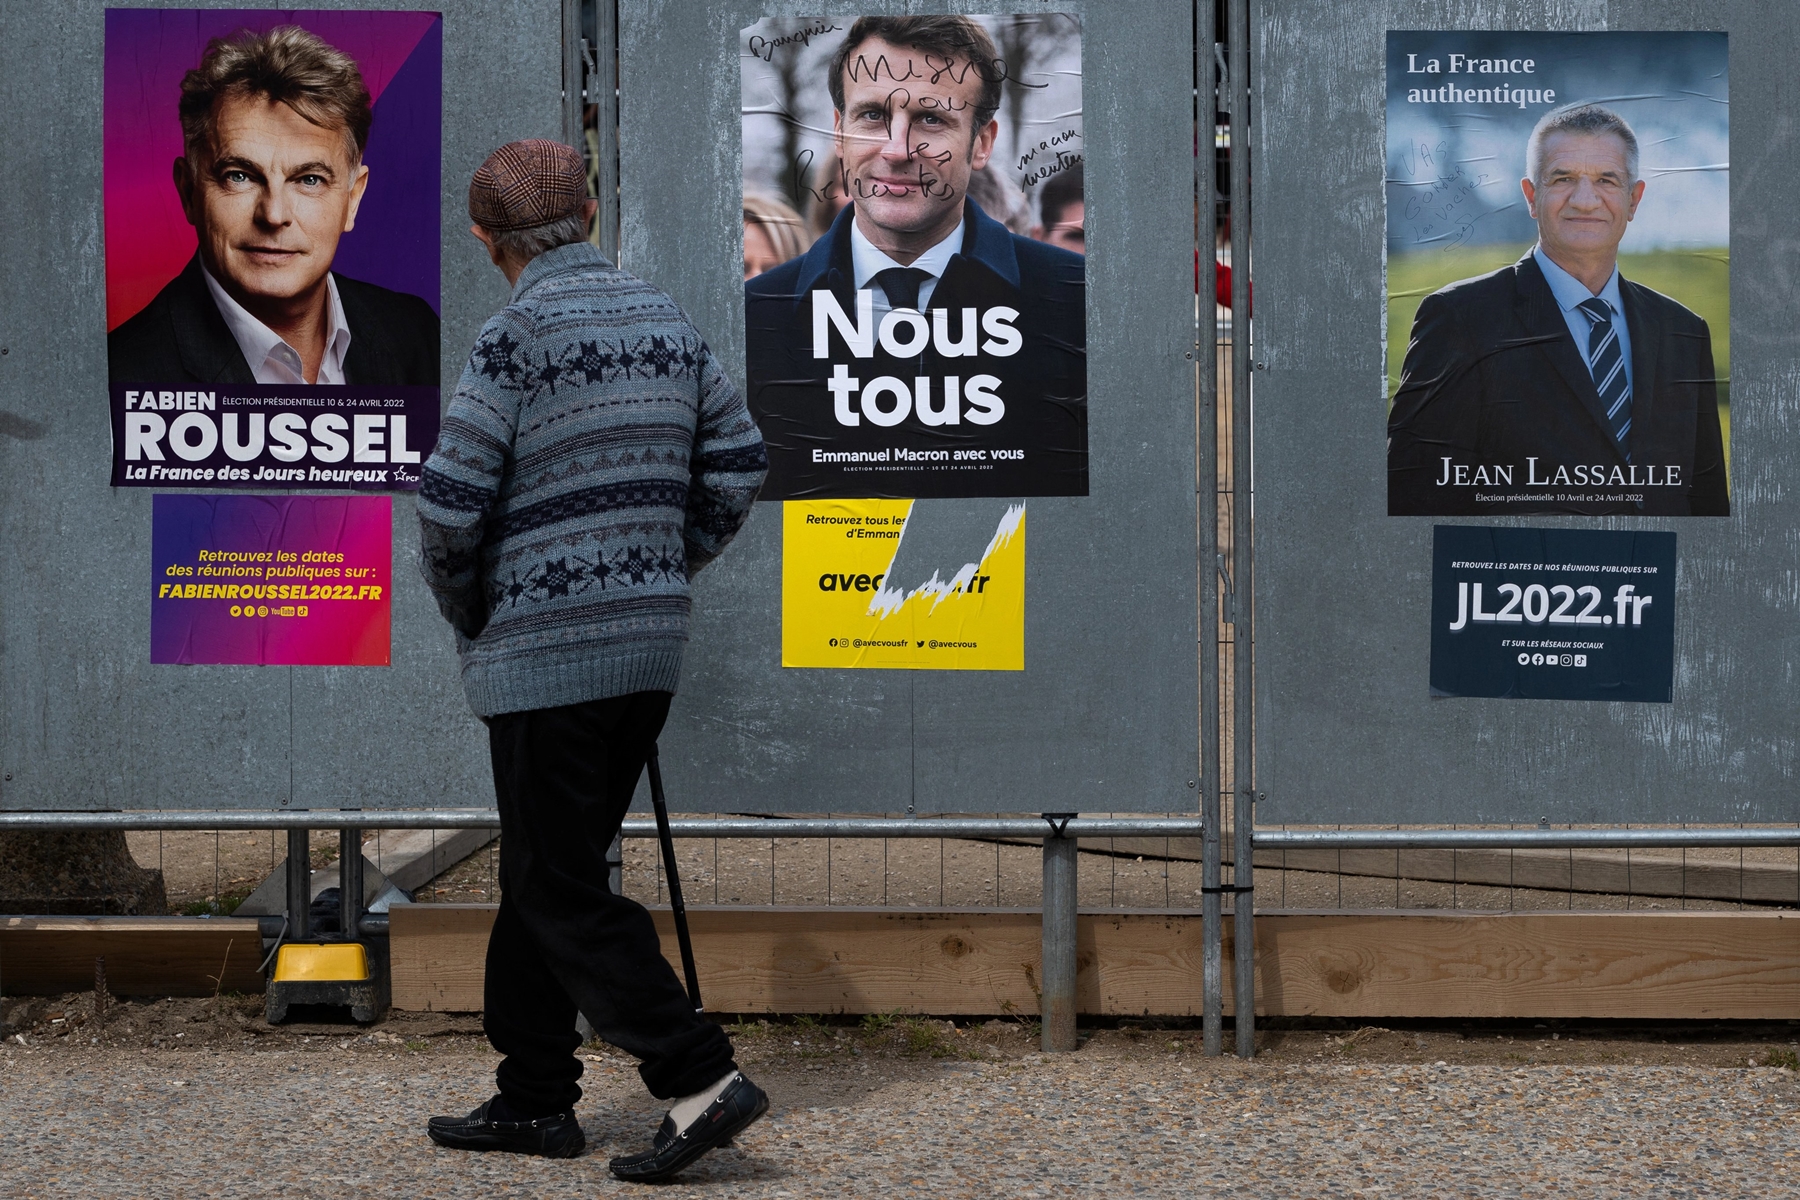 Γαλλικές εκλογές 2022 – β’ γύρος: Ποιο είναι το φαβορί σύμφωνα με δημοσκόπηση